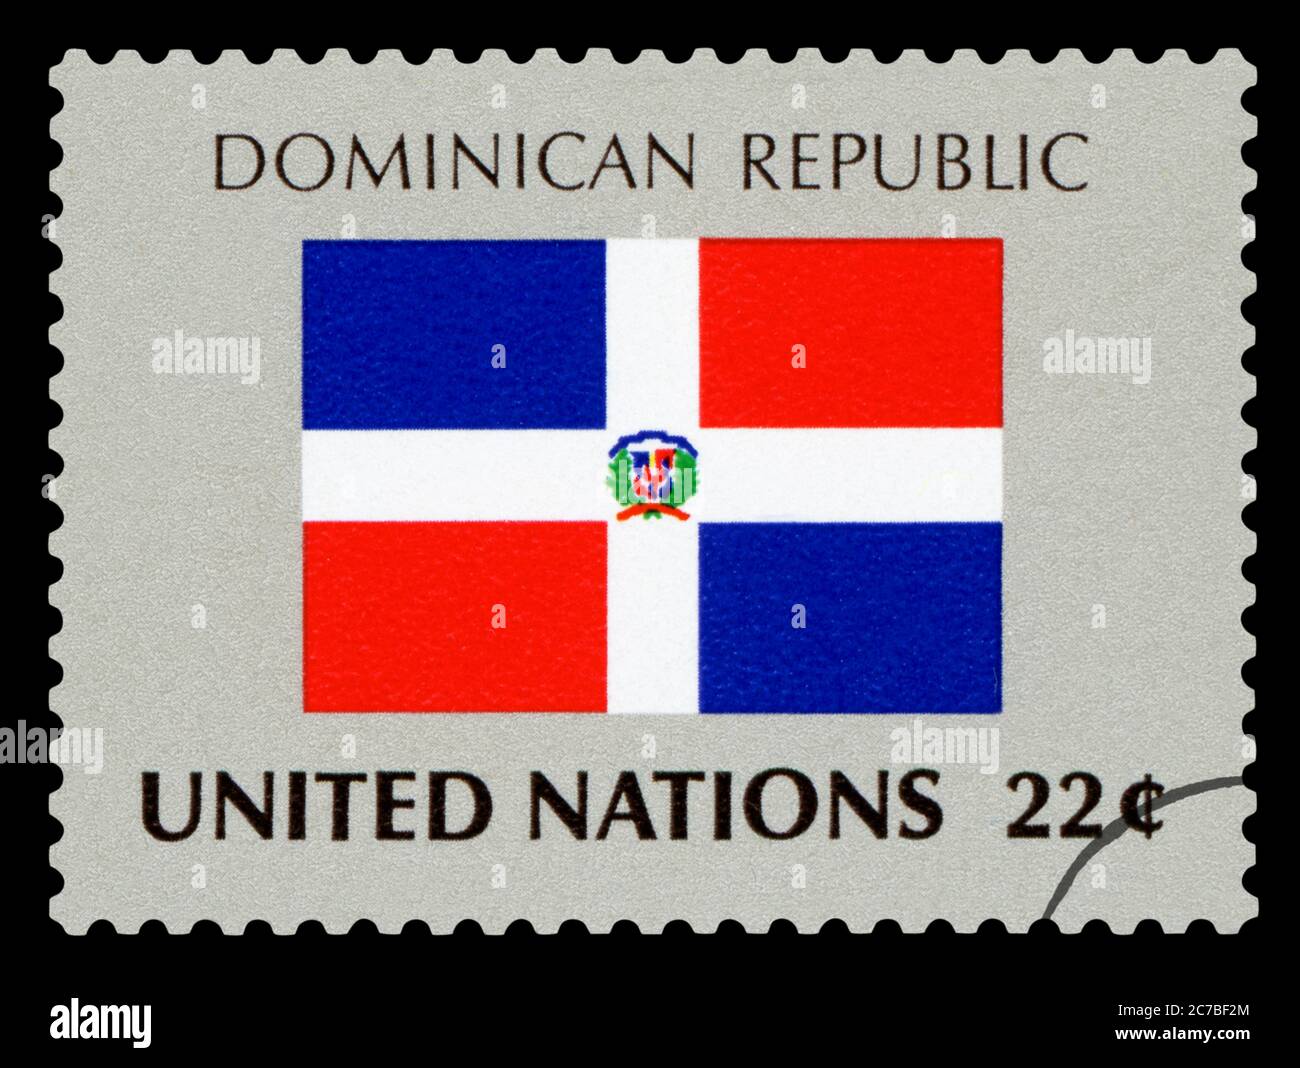 RÉPUBLIQUE DOMINICAINE - timbre de poste du drapeau national de la République dominicaine, série des Nations Unies, vers 1984. Isolé sur fond noir. Banque D'Images